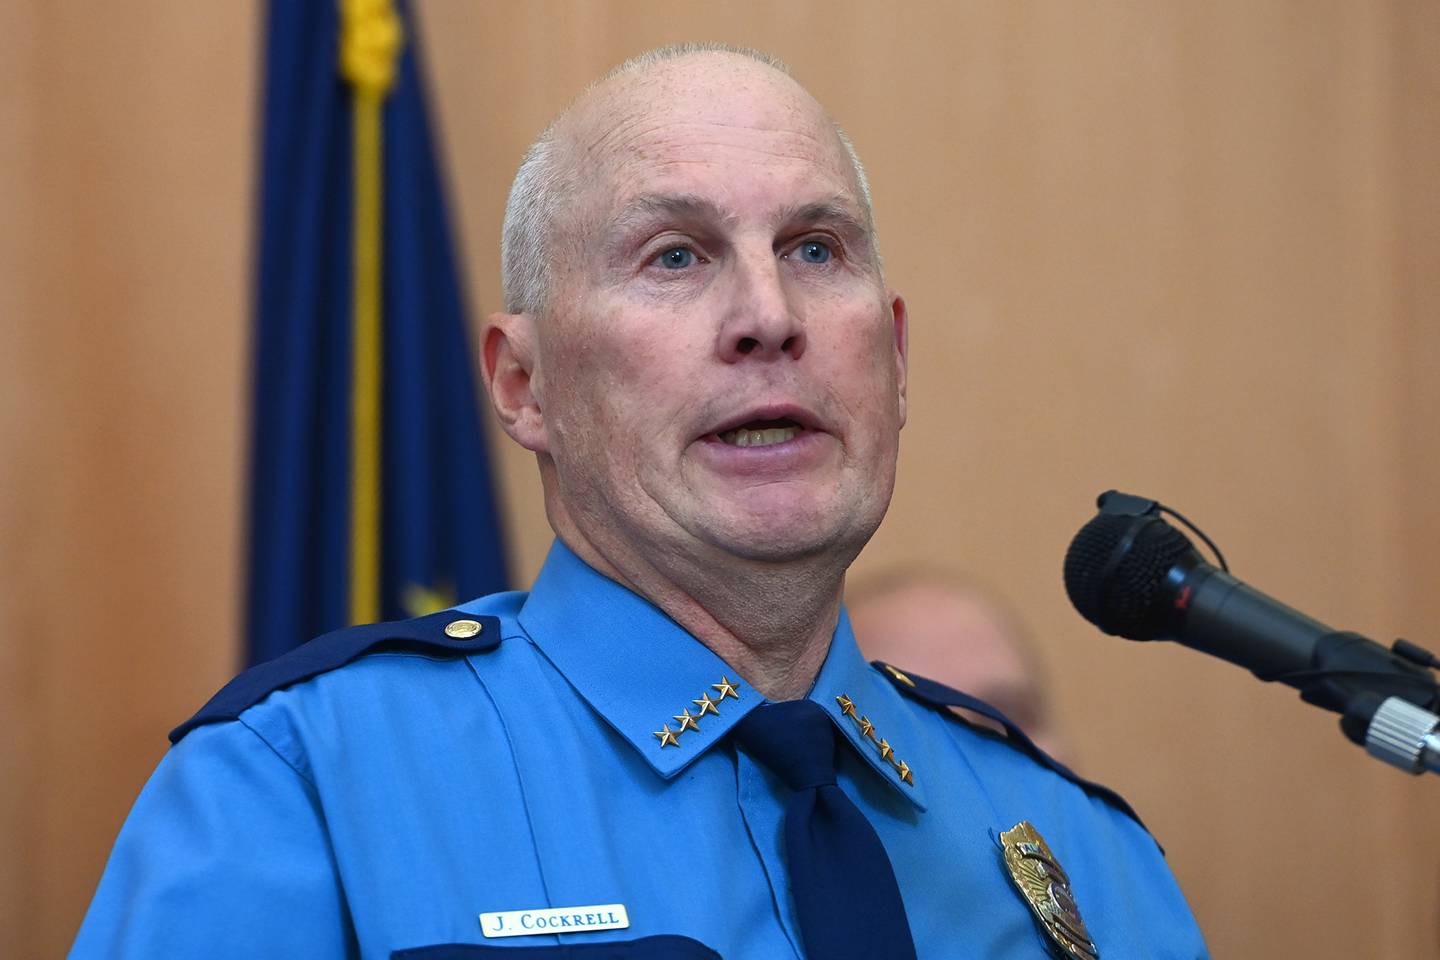 Alaska Department of Public Safety Commissioner James Cockrell Narcotics seizure